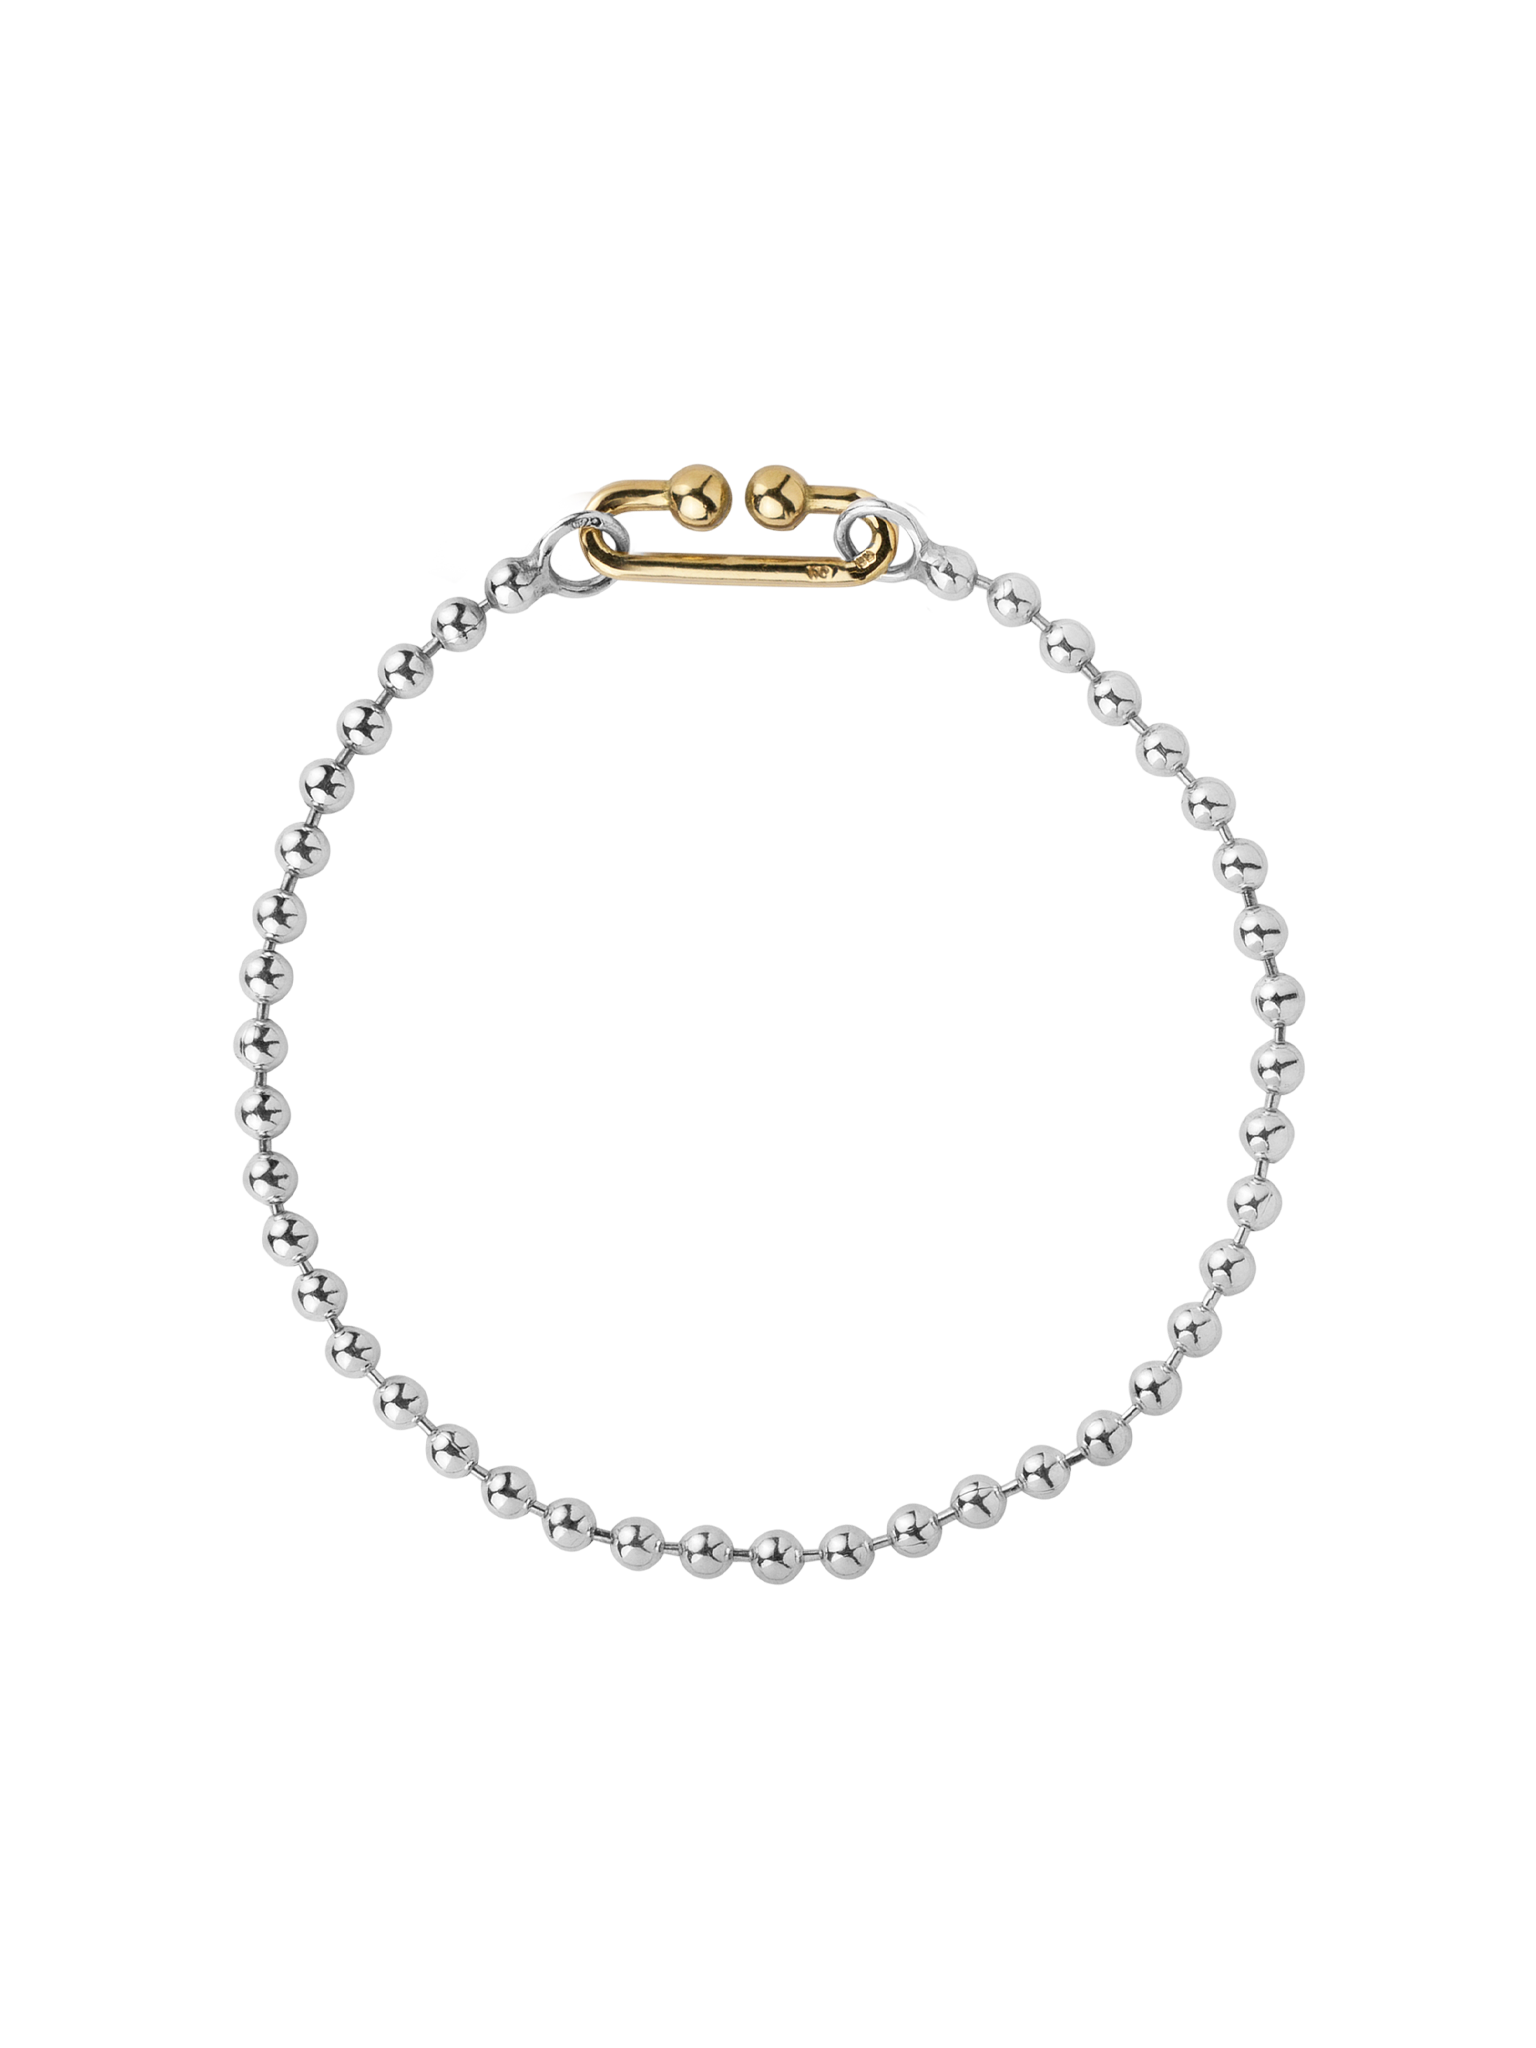 Milkyway ball bracelet silver